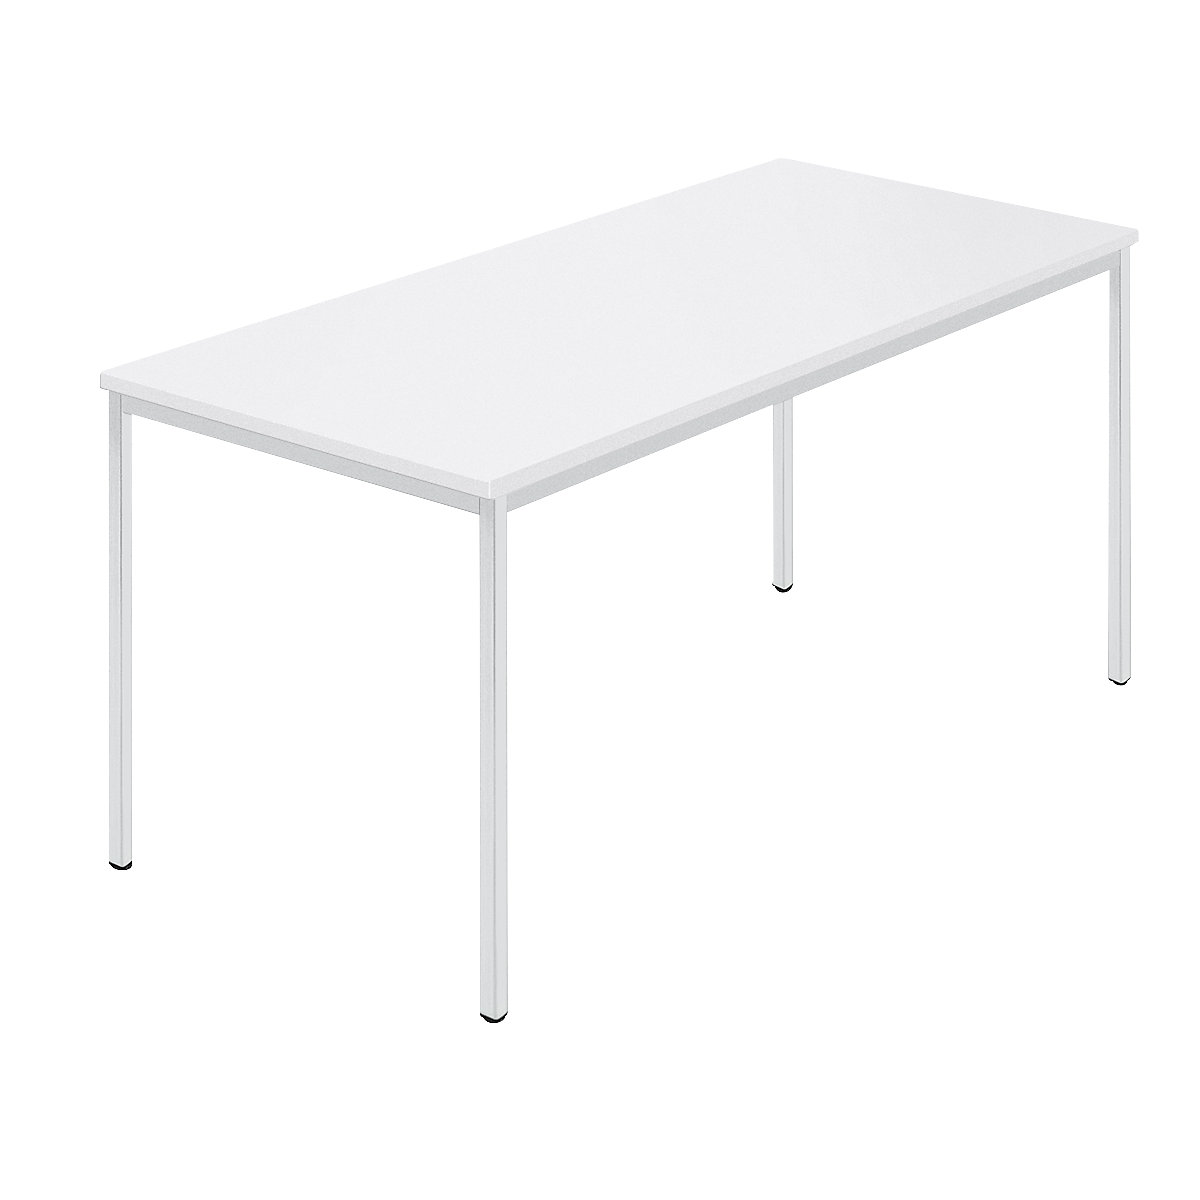 Stół prostokątny, czworokątna rurka lakierowana